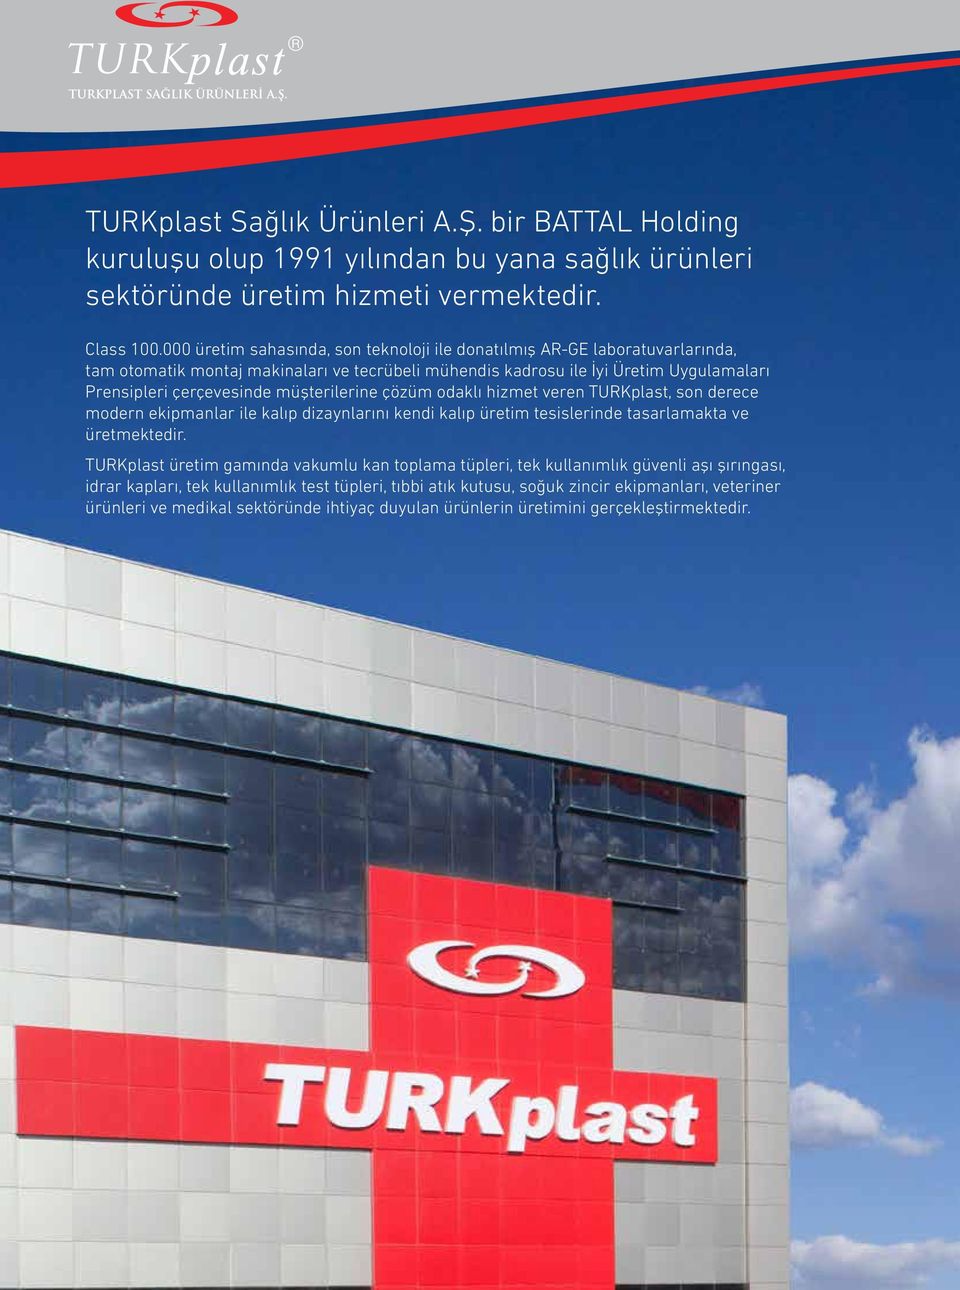 müşterilerine çözüm odaklı hizmet veren TURKplast, son derece modern ekipmanlar ile kalıp dizaynlarını kendi kalıp üretim tesislerinde tasarlamakta ve üretmektedir.